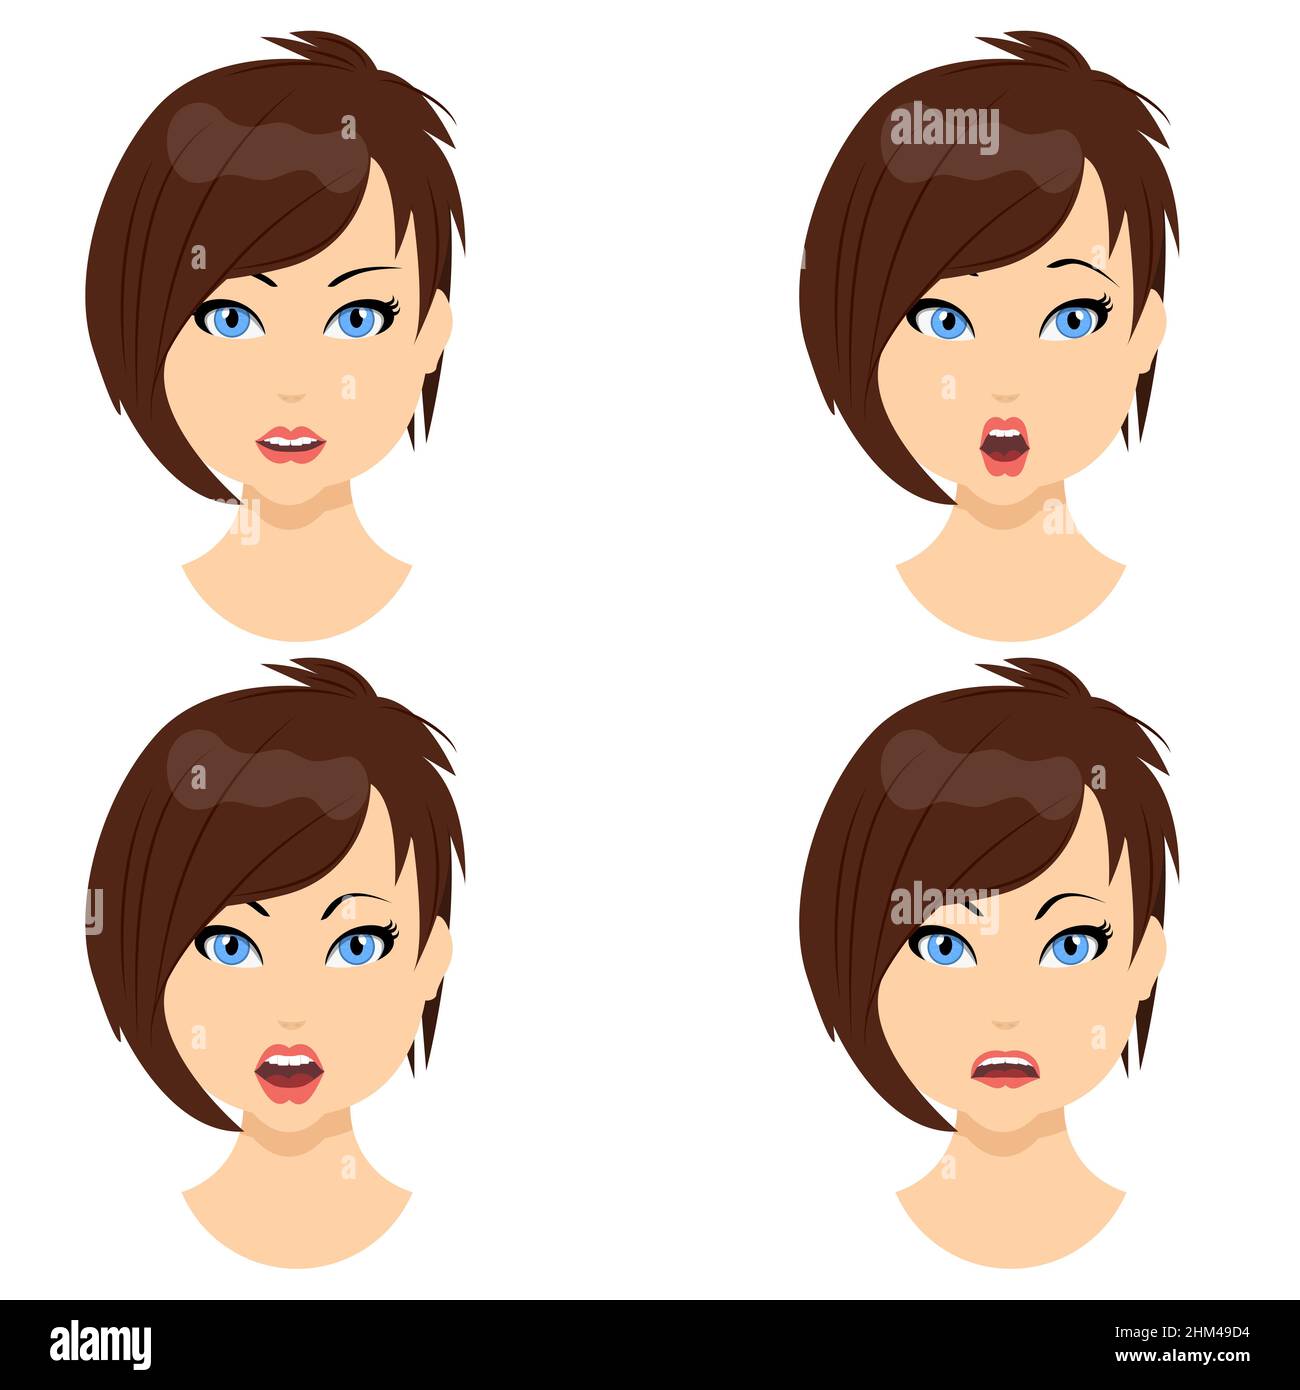 Avatar féminin émotion .Icônes d'image de profil.Joli brunette moderne et simple.Illustration vectorielle de style plat.EPS10 Illustration de Vecteur